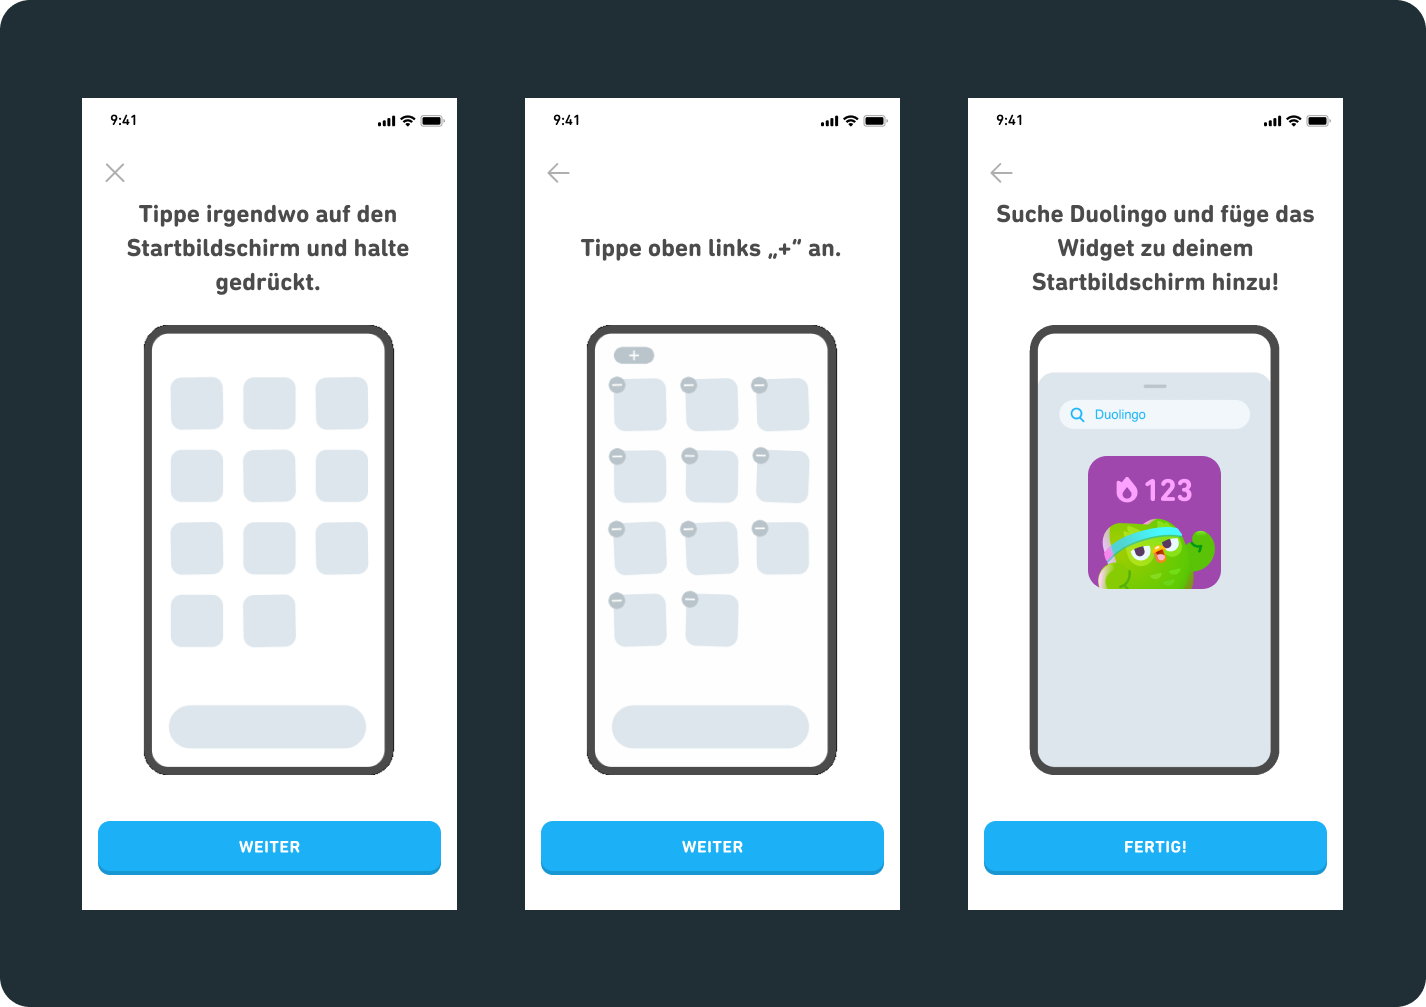 3 iPhone-Bildschirme mit einer Anleitung zur Installation des Widgets 1) Tippe irgendwo auf den Startbildschirm und halte gedrückt. 2) Tippe oben links „+” an. 3)  Suche Duolingo und füge das Widget zu deinem Startbildschirm hinzu!